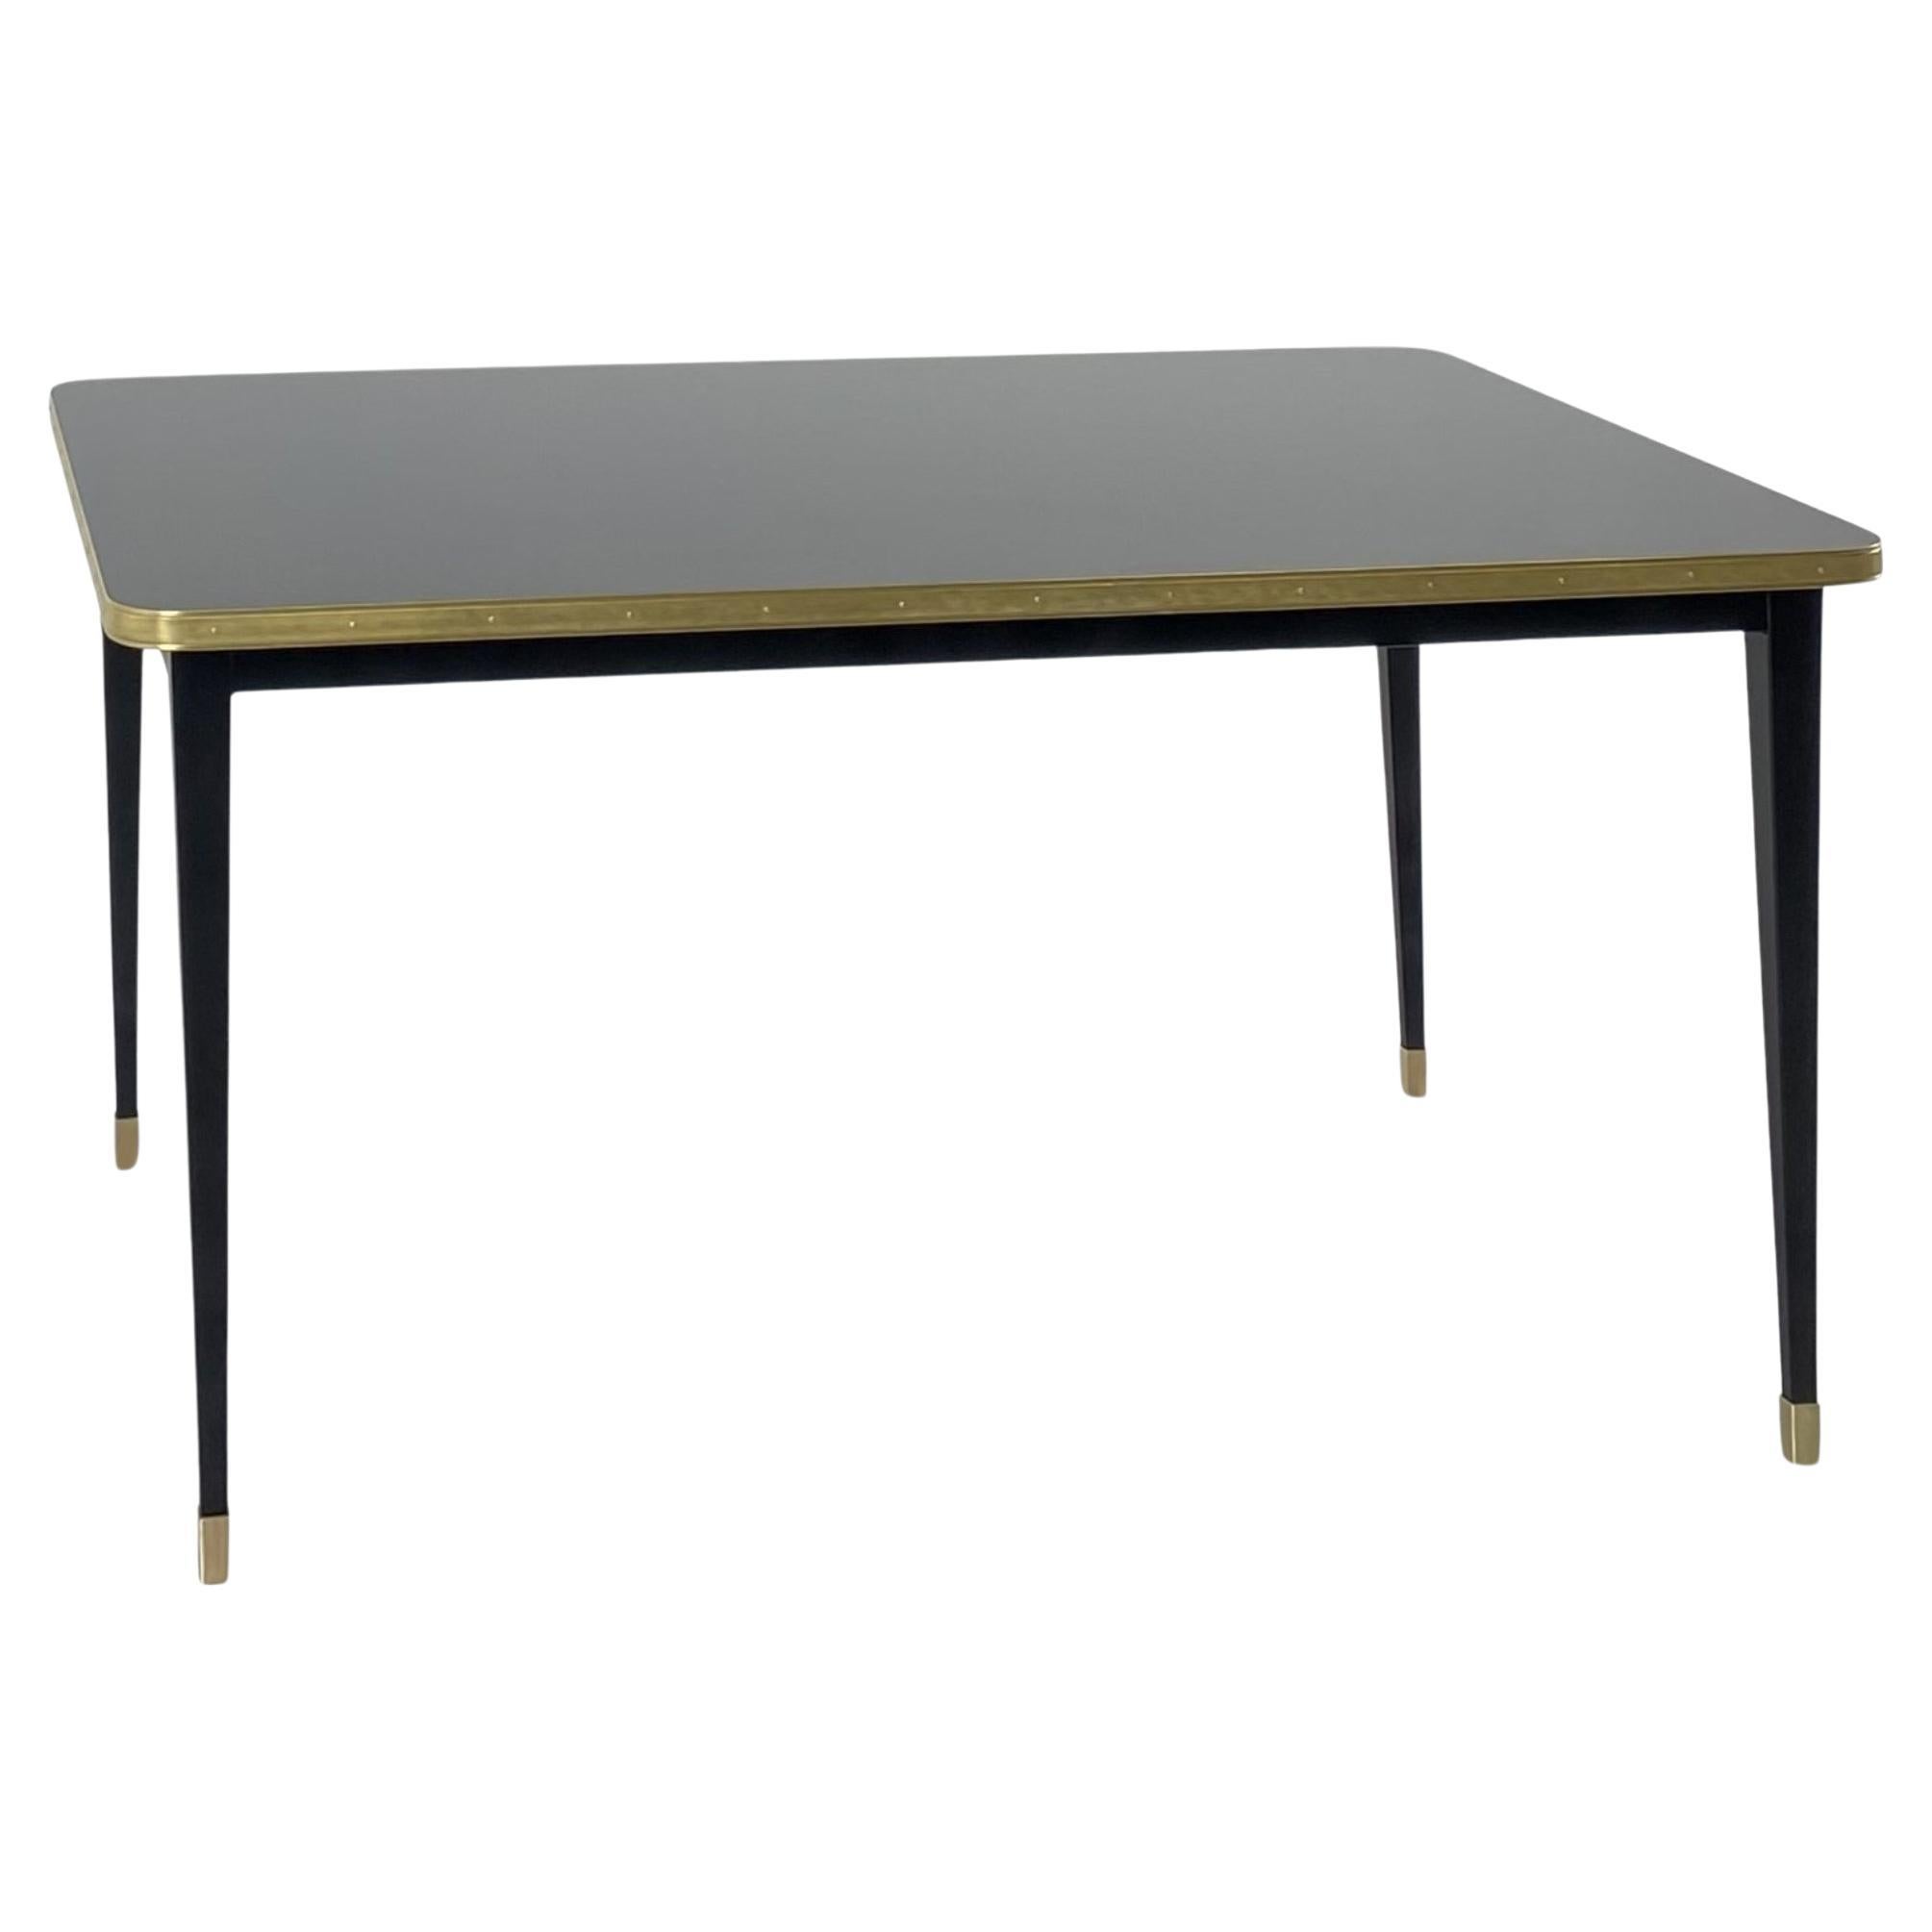 Table de salle à manger carrée, plateau brillant, laiton, pieds coniques noirs, Diamond Black- S